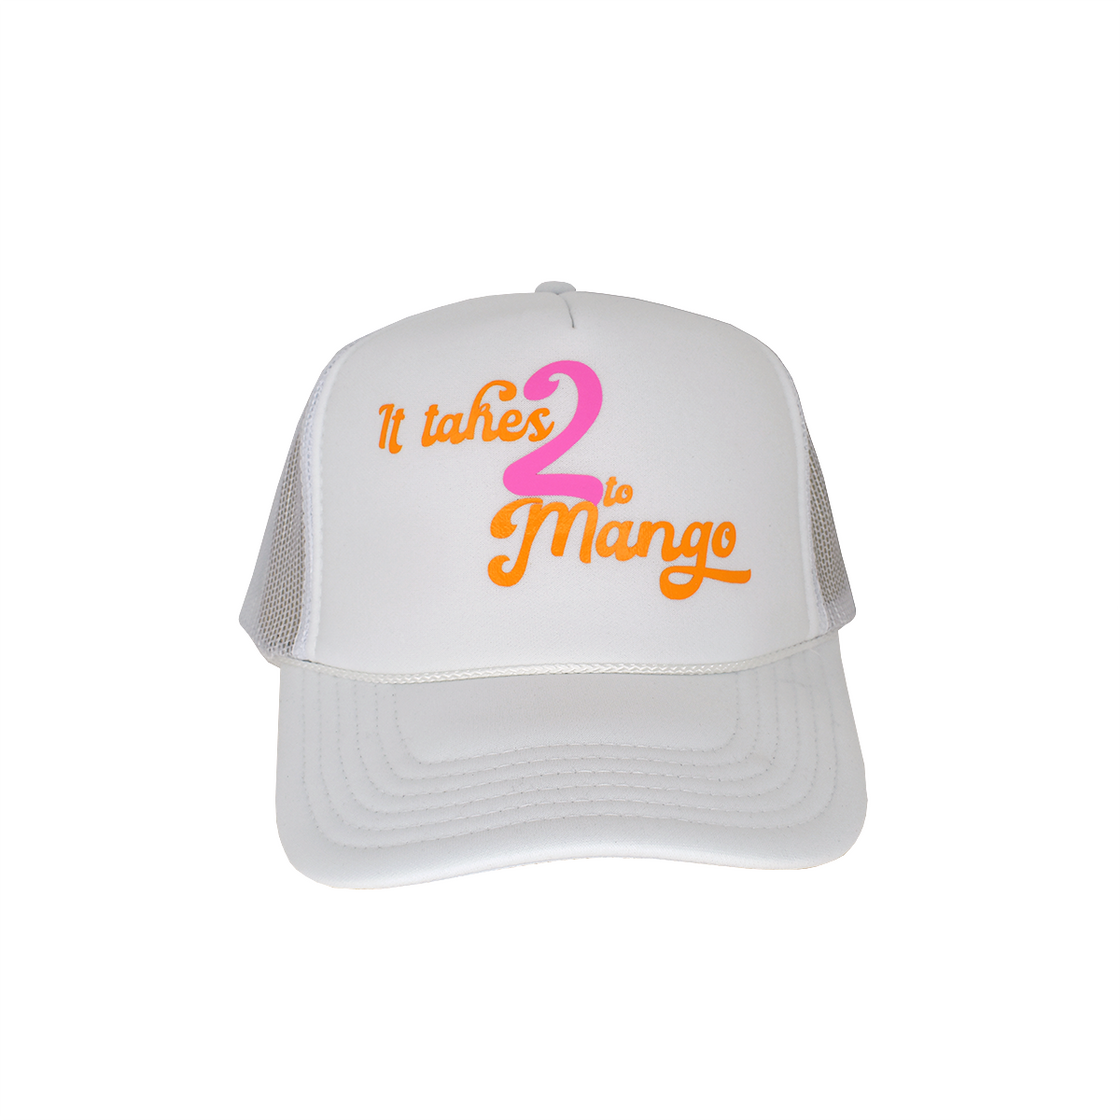 “It takes 2 to Mango” Trucker Hat